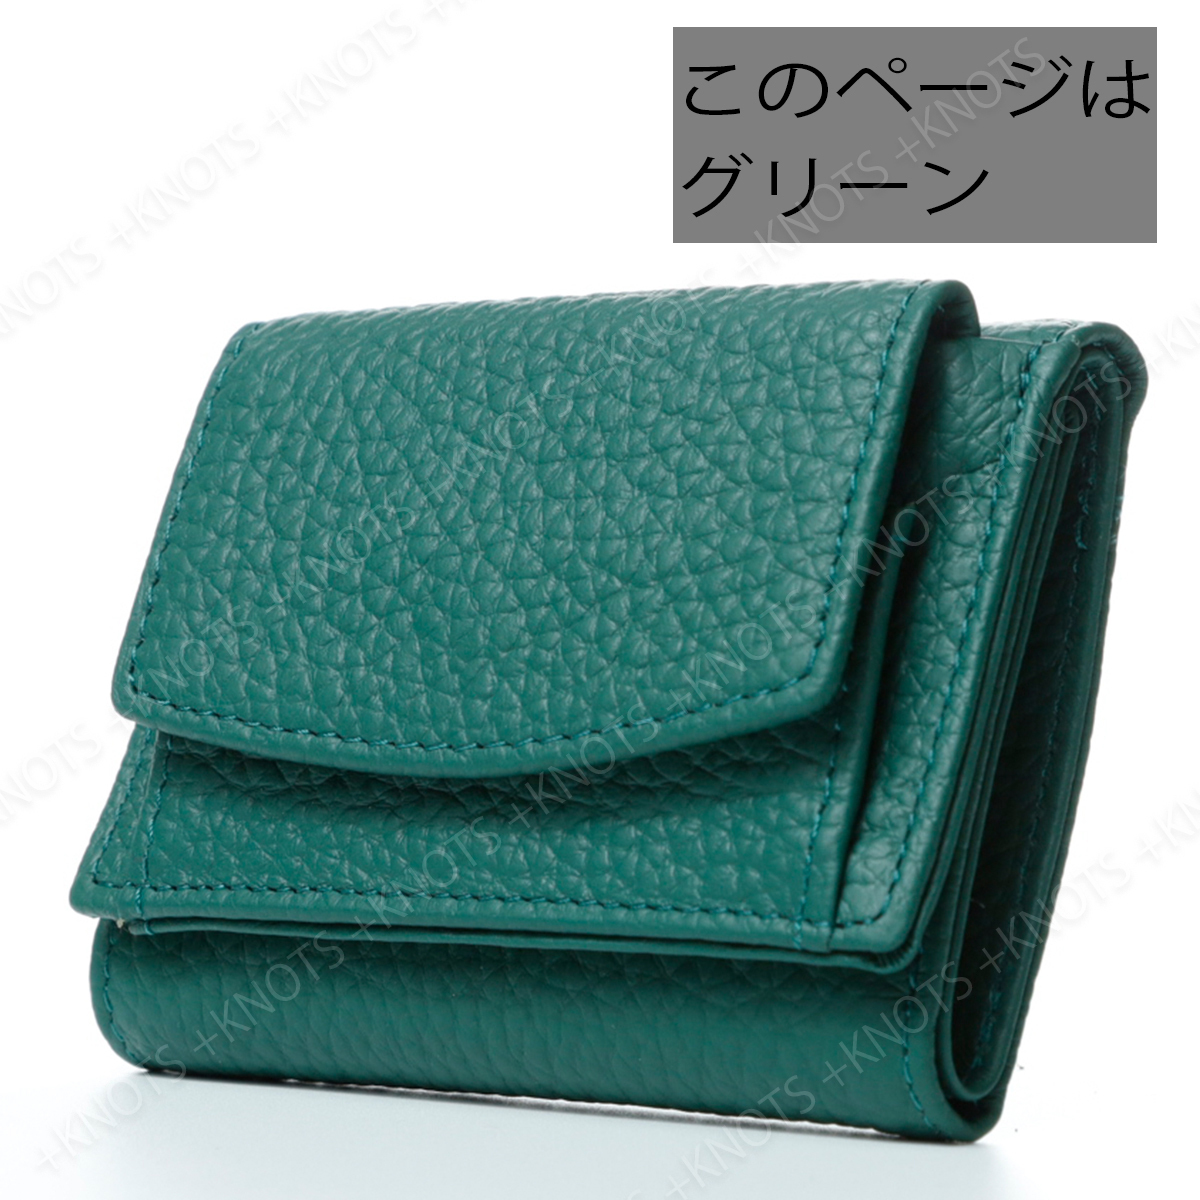 本革ミニ財布 グリーン緑 三つ折り財布 小さい財布 コンパクト財布 レディース 牛革レザー ボックス型コインケース小銭入れ